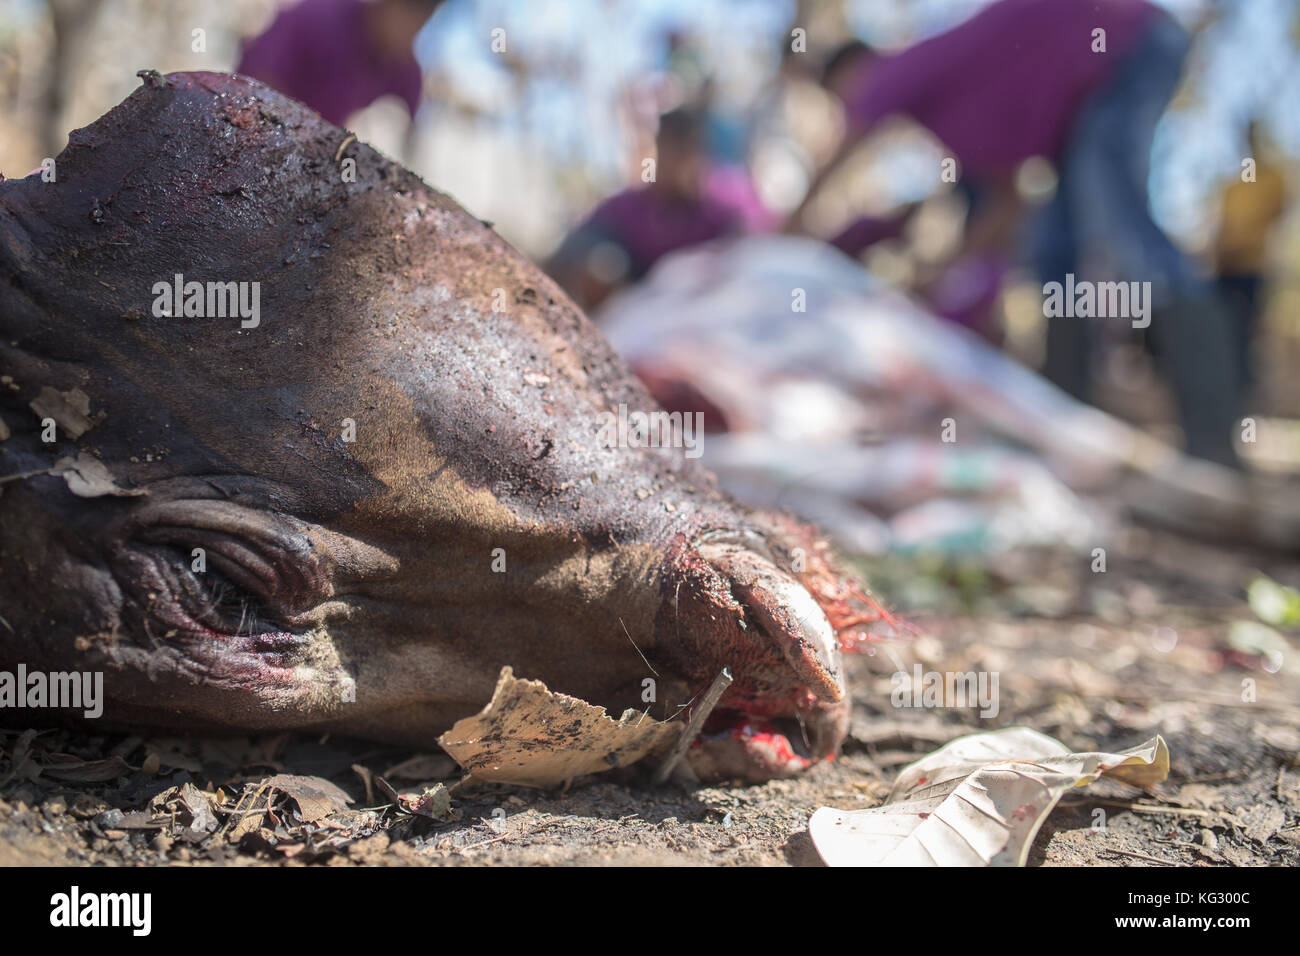 Animales sacrificados siendo sacrificados en un día de fiesta musulmán tradicional. Foto de stock